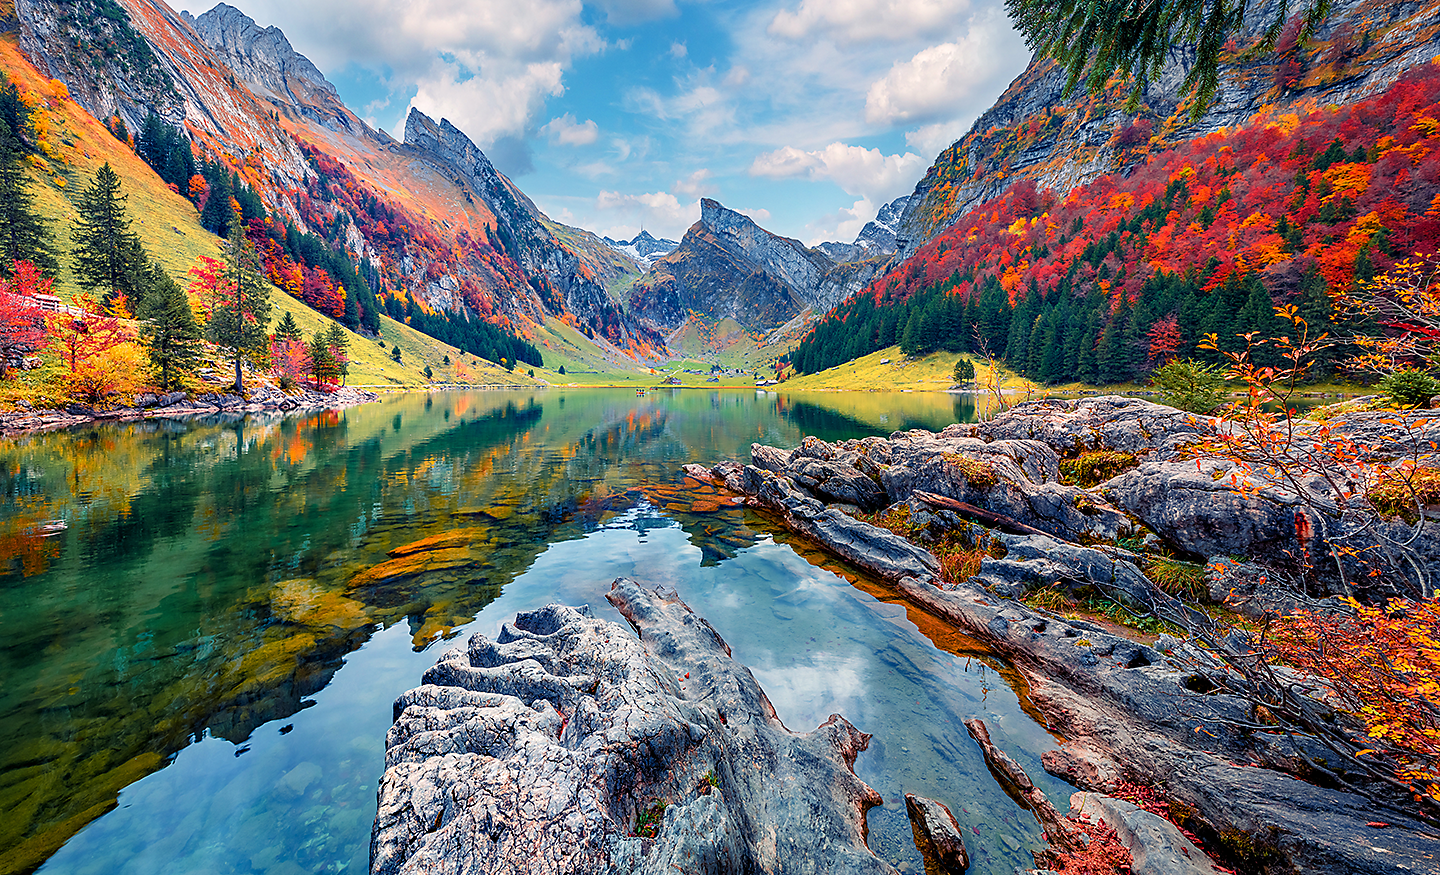 Beeld van een meer tussen de bergen en bomen, met ongelofelijk rijke, levendige kleuren